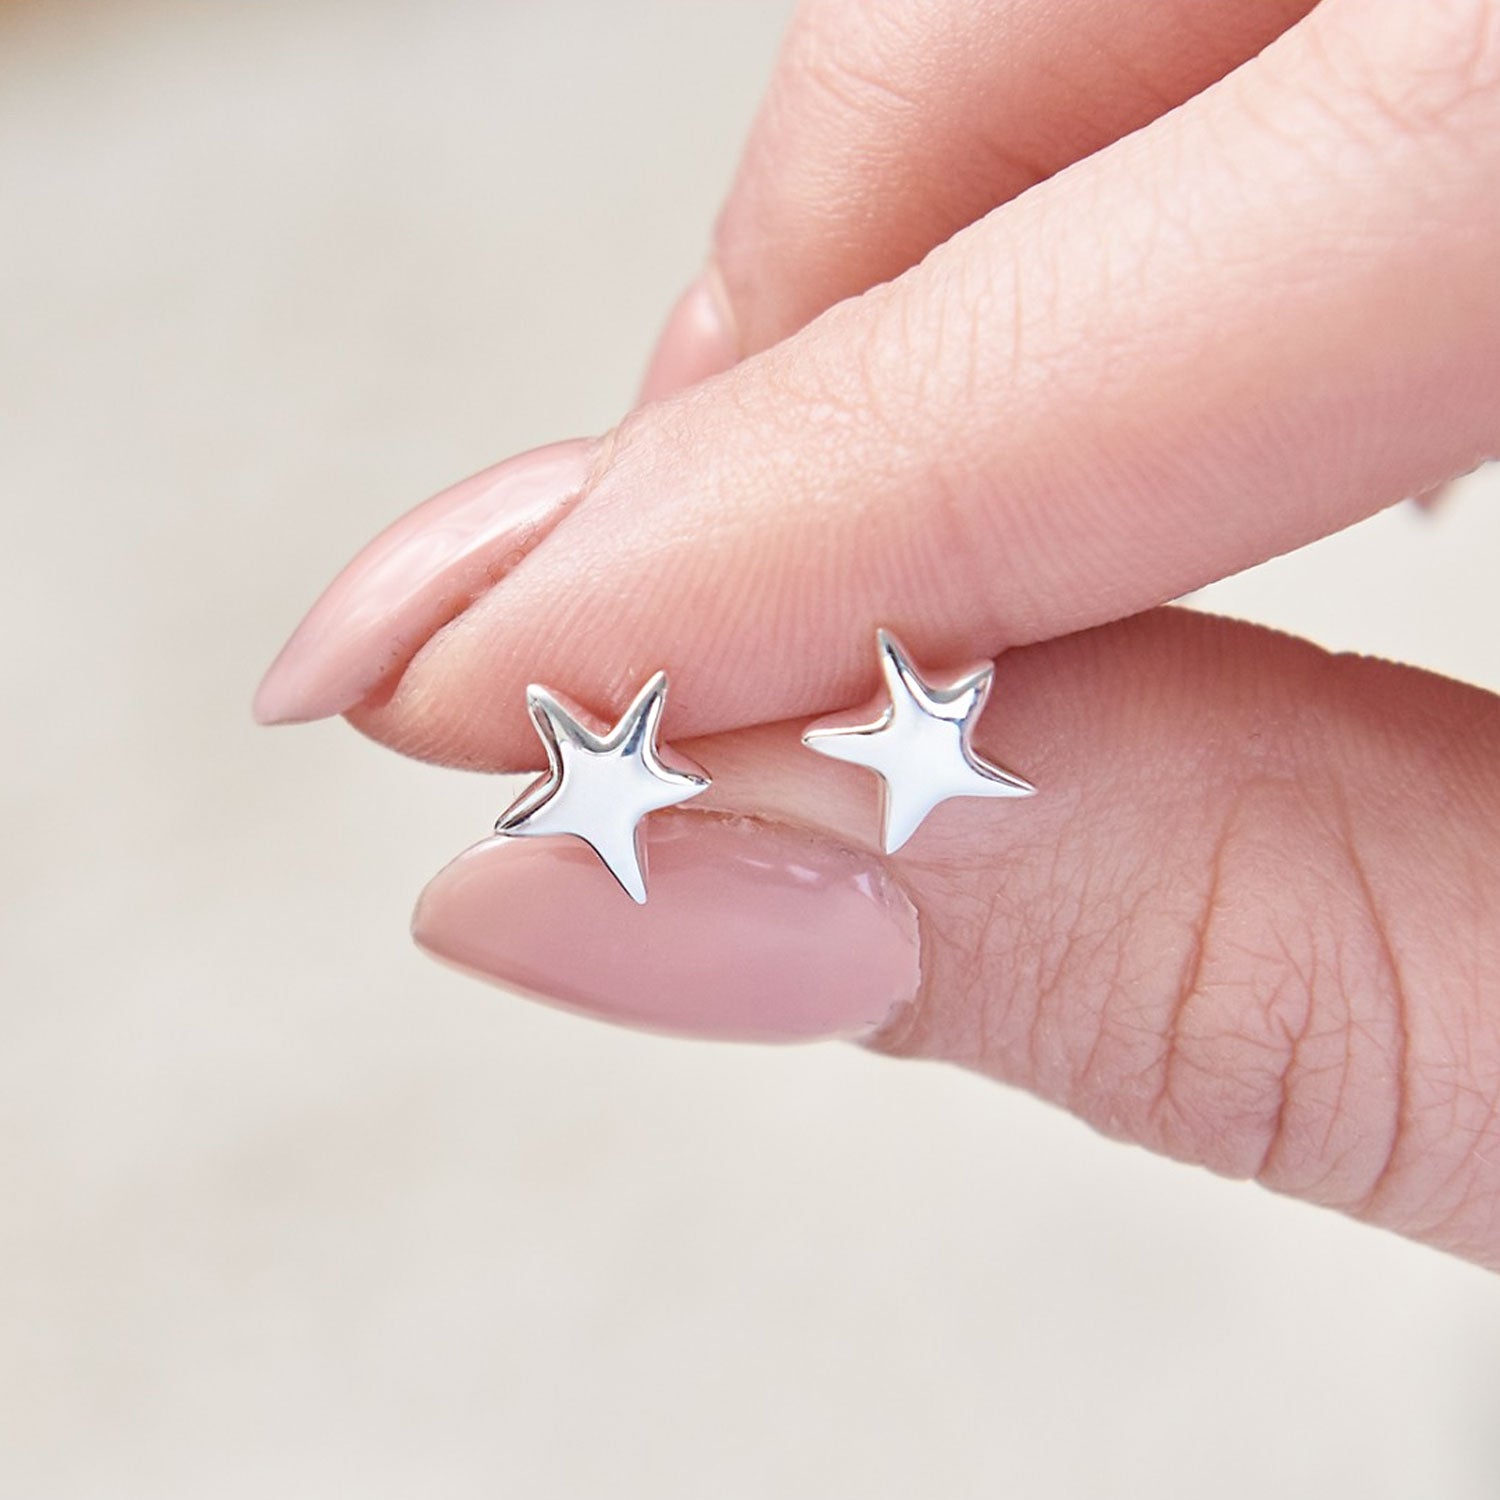 Silver Stardust Stud Earrings - Scarlett Jewellery